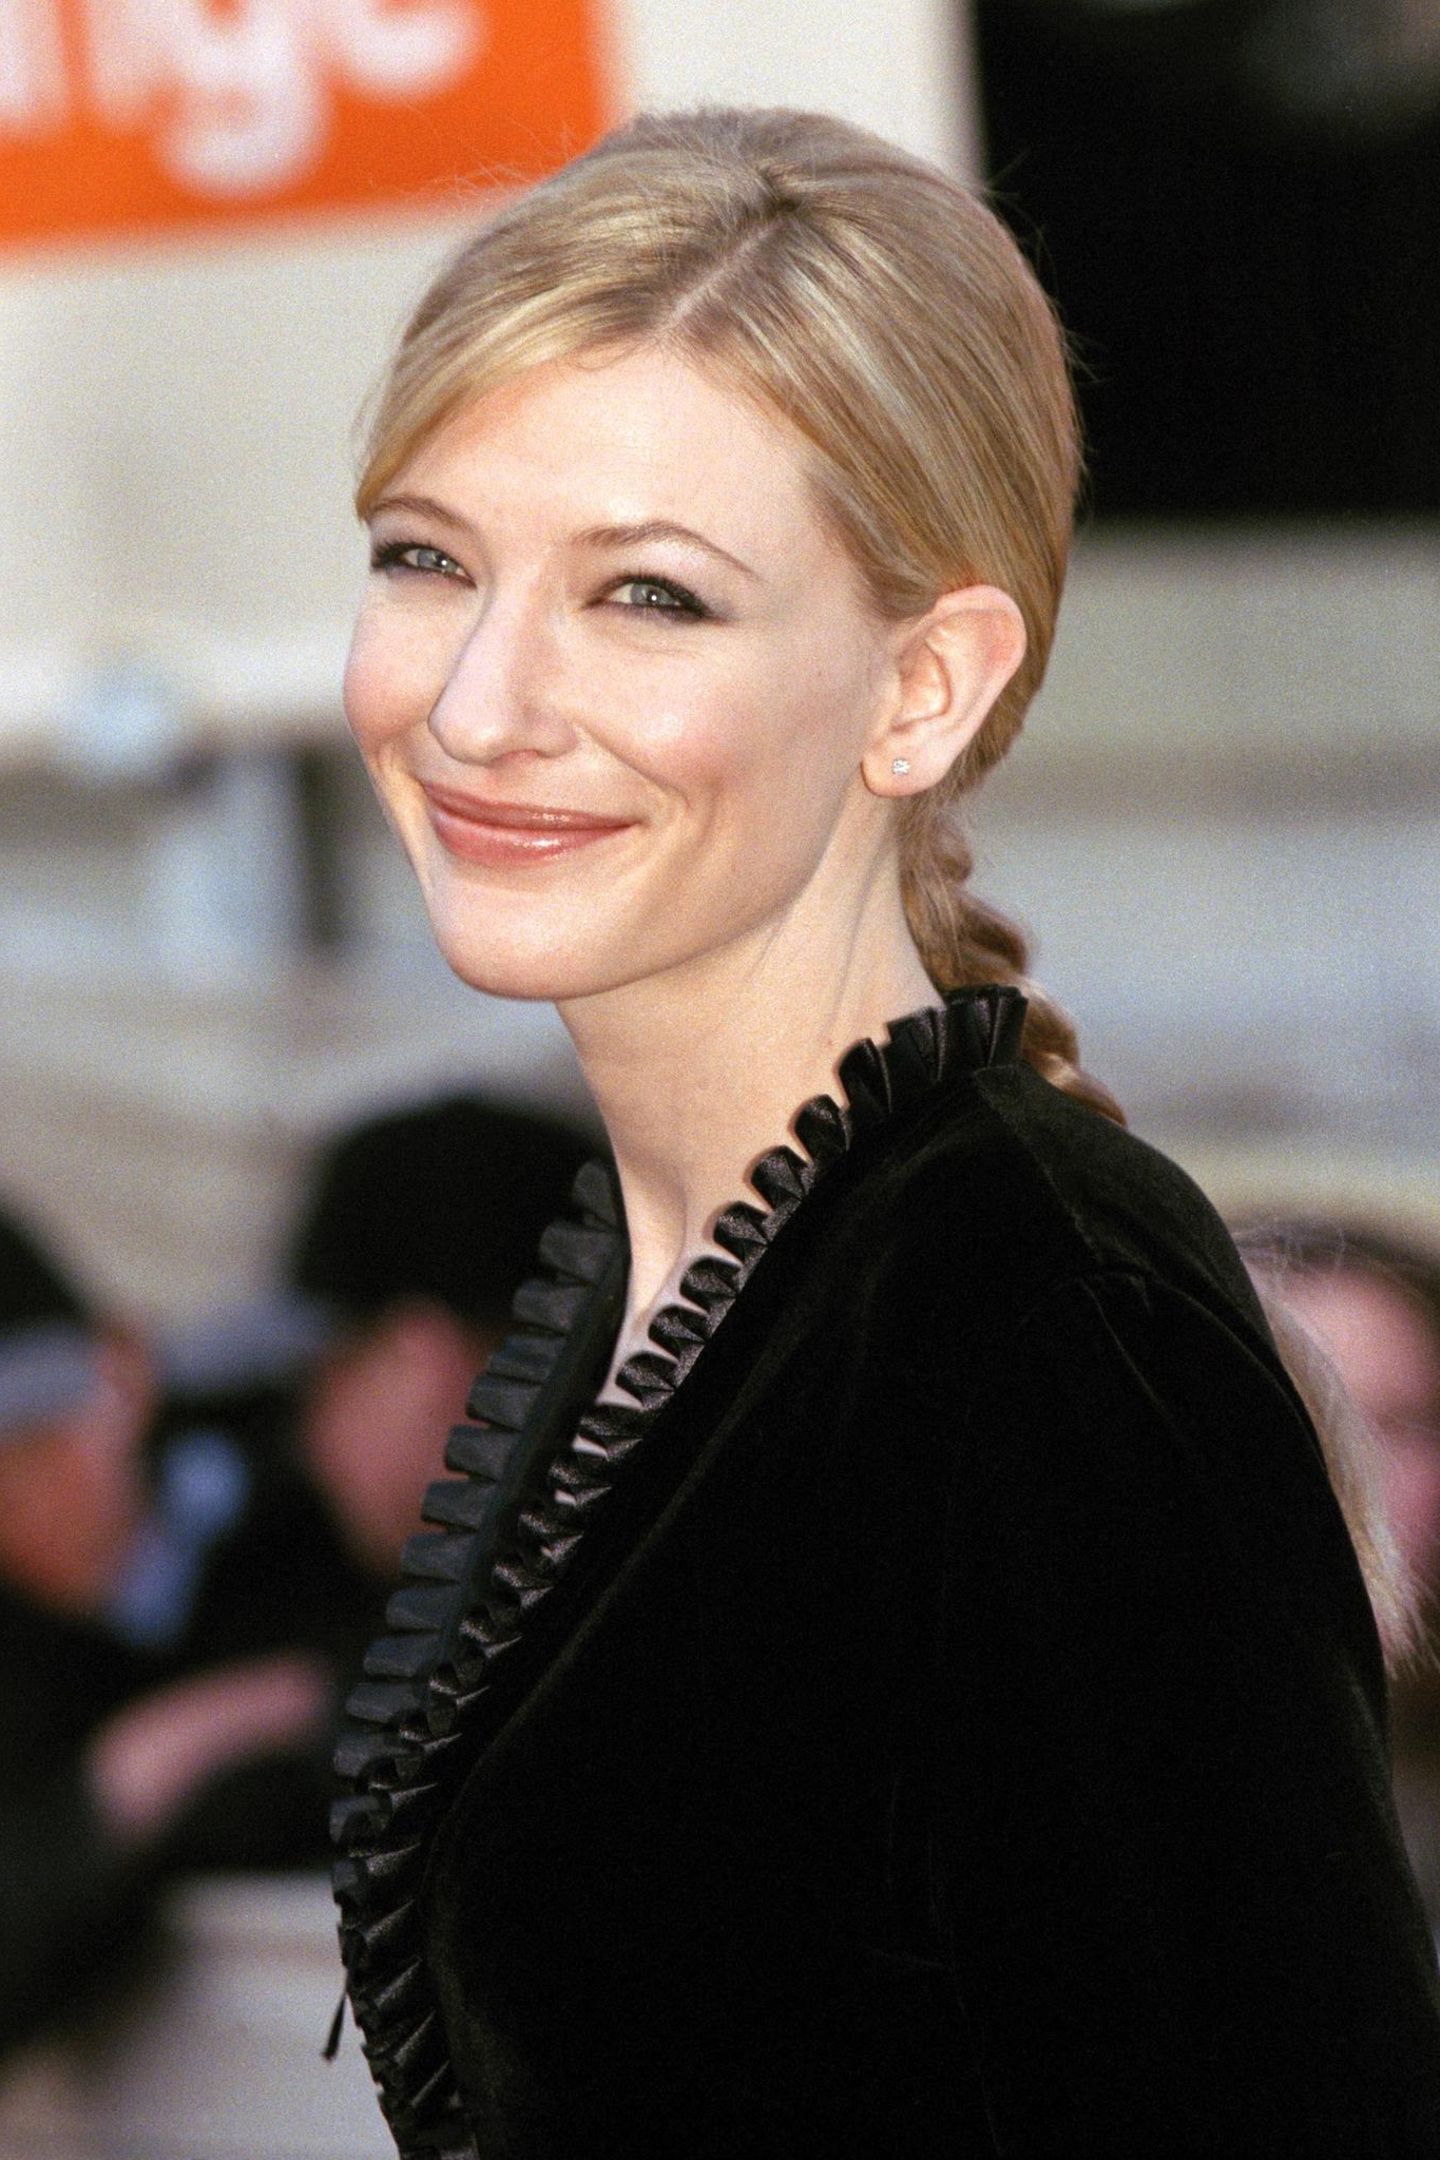 1999 erscheint Cate Blanchett in einem schwarzen Samtkleid und einem langen, geflochtenem Pferdeschwanz zu den British Academy Film Awards. Zu diesem Zeitpunkt ist die hübsche Schauspielerin 30 Jahre alt. 